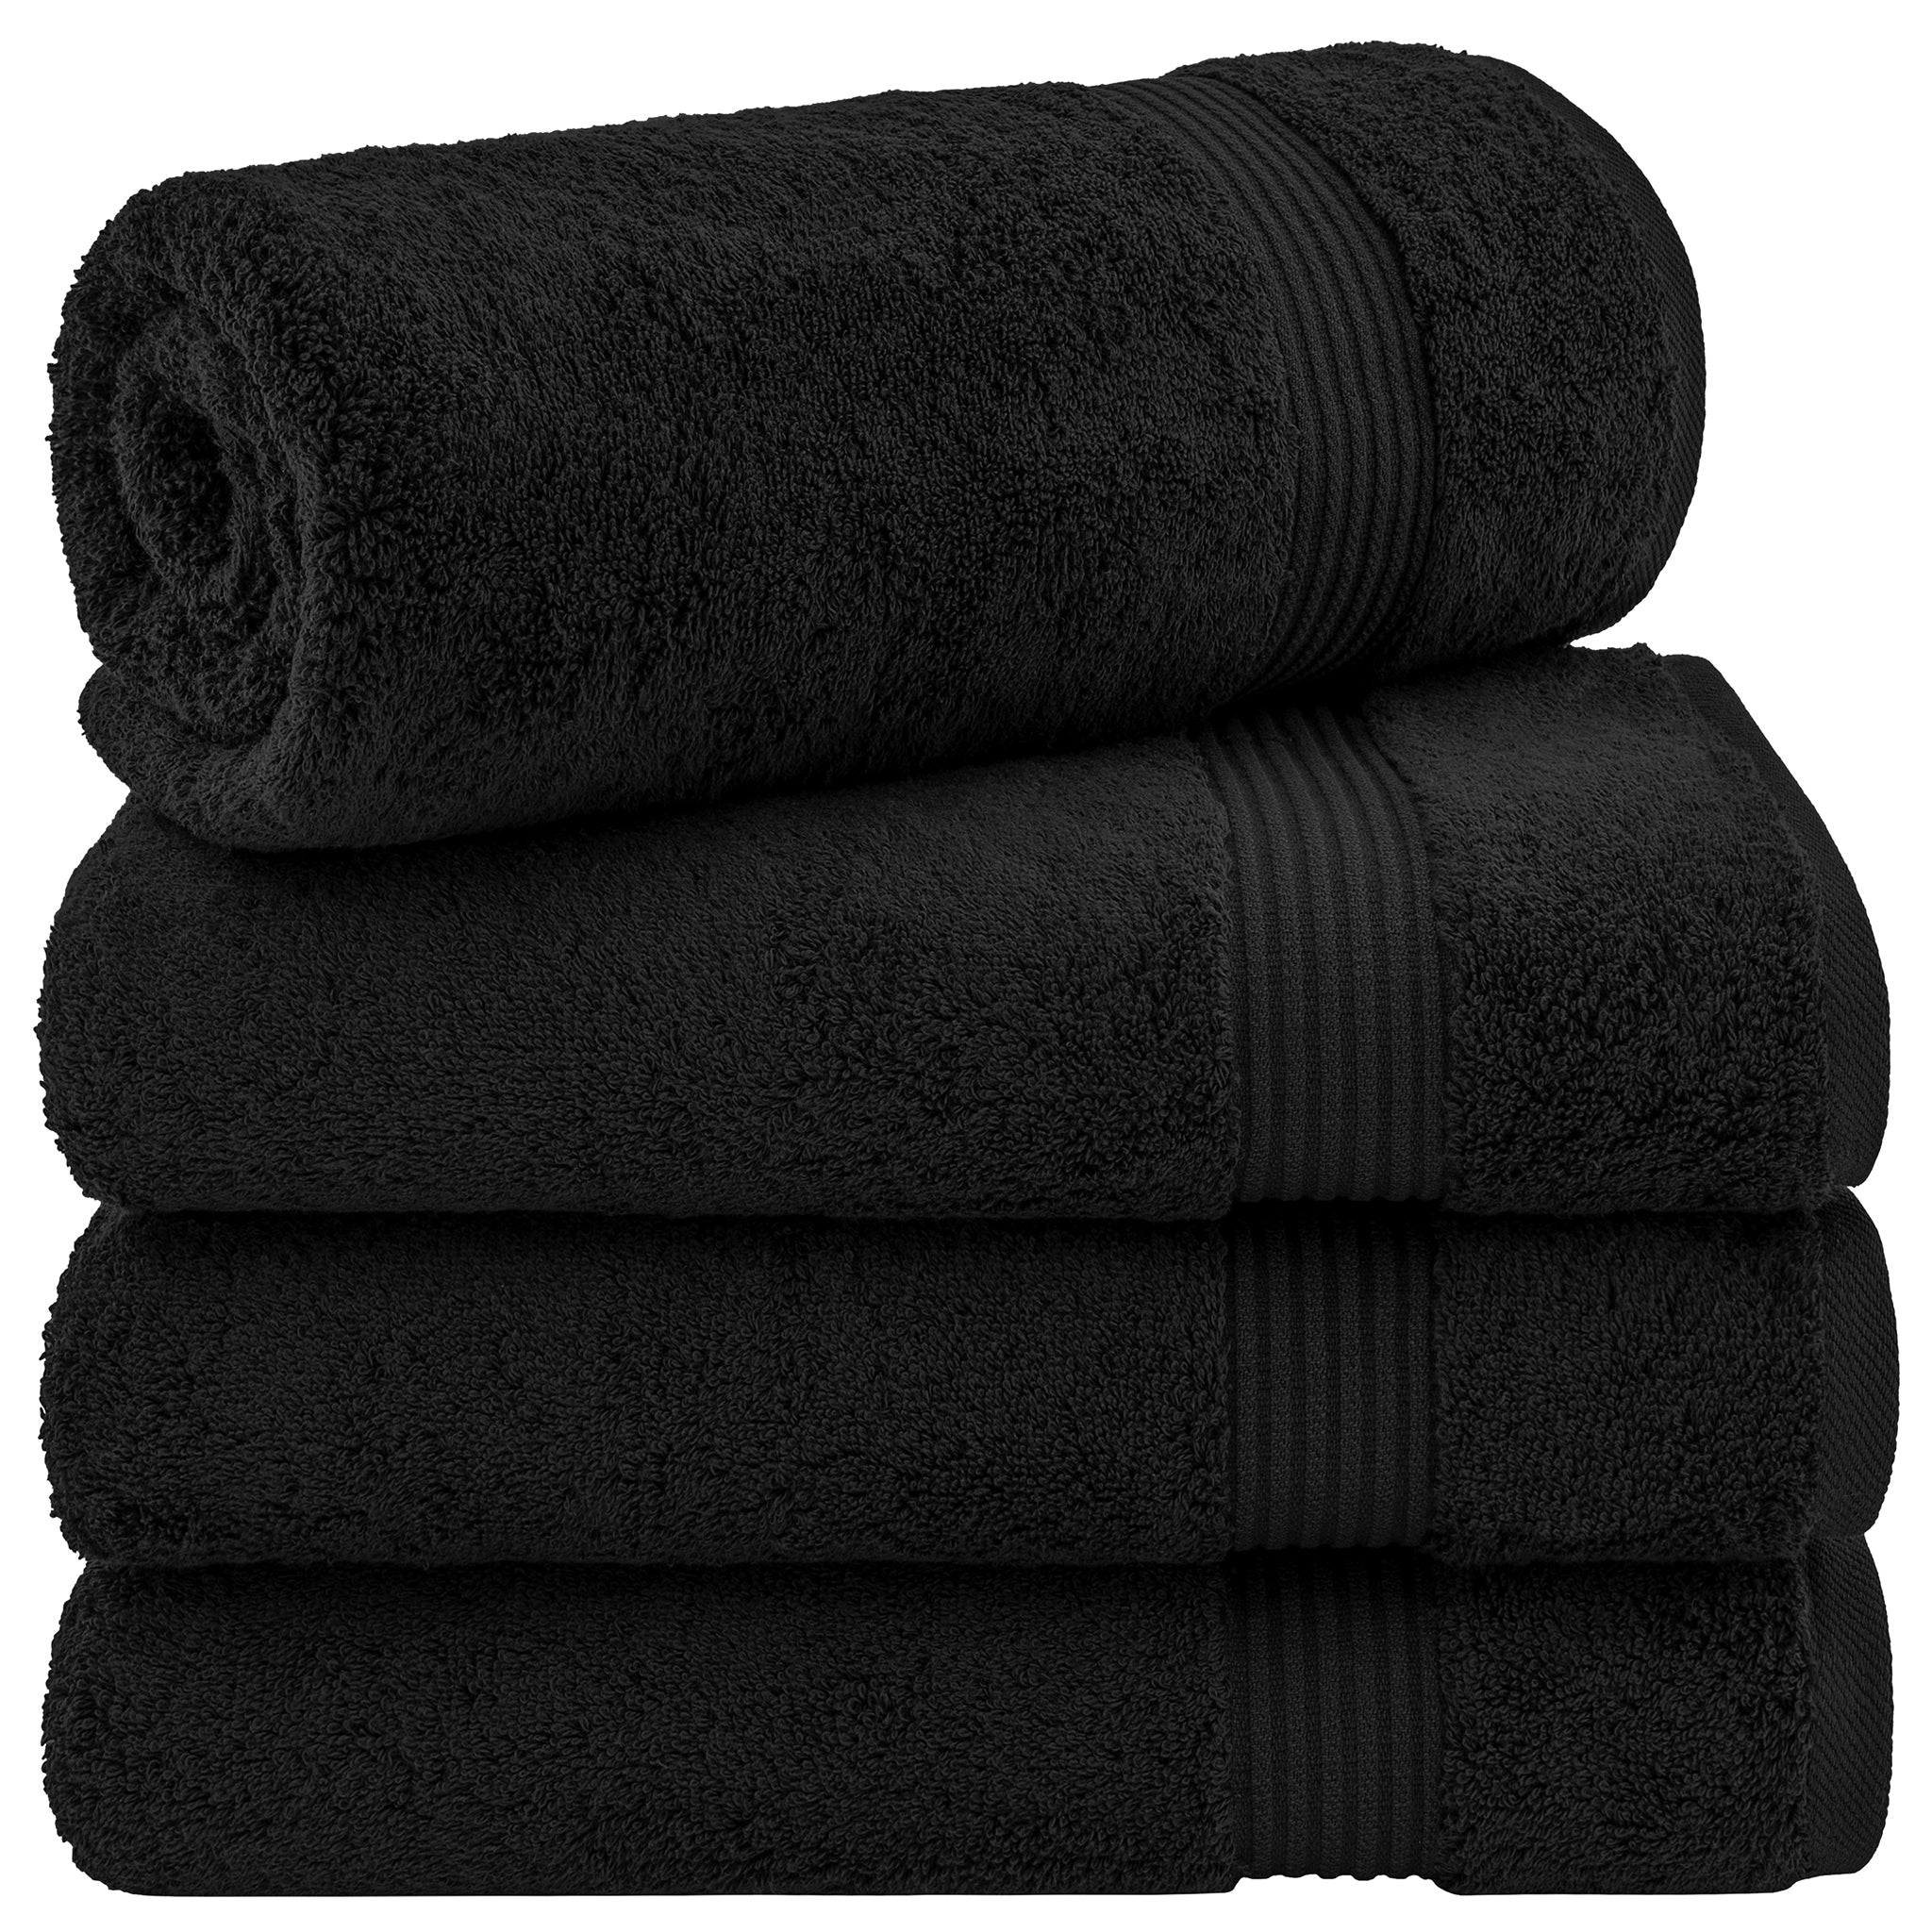 American Soft Linen Bekos 100% Cotton Turkish Towels, 4 Piece Bath Towel Set -black-01